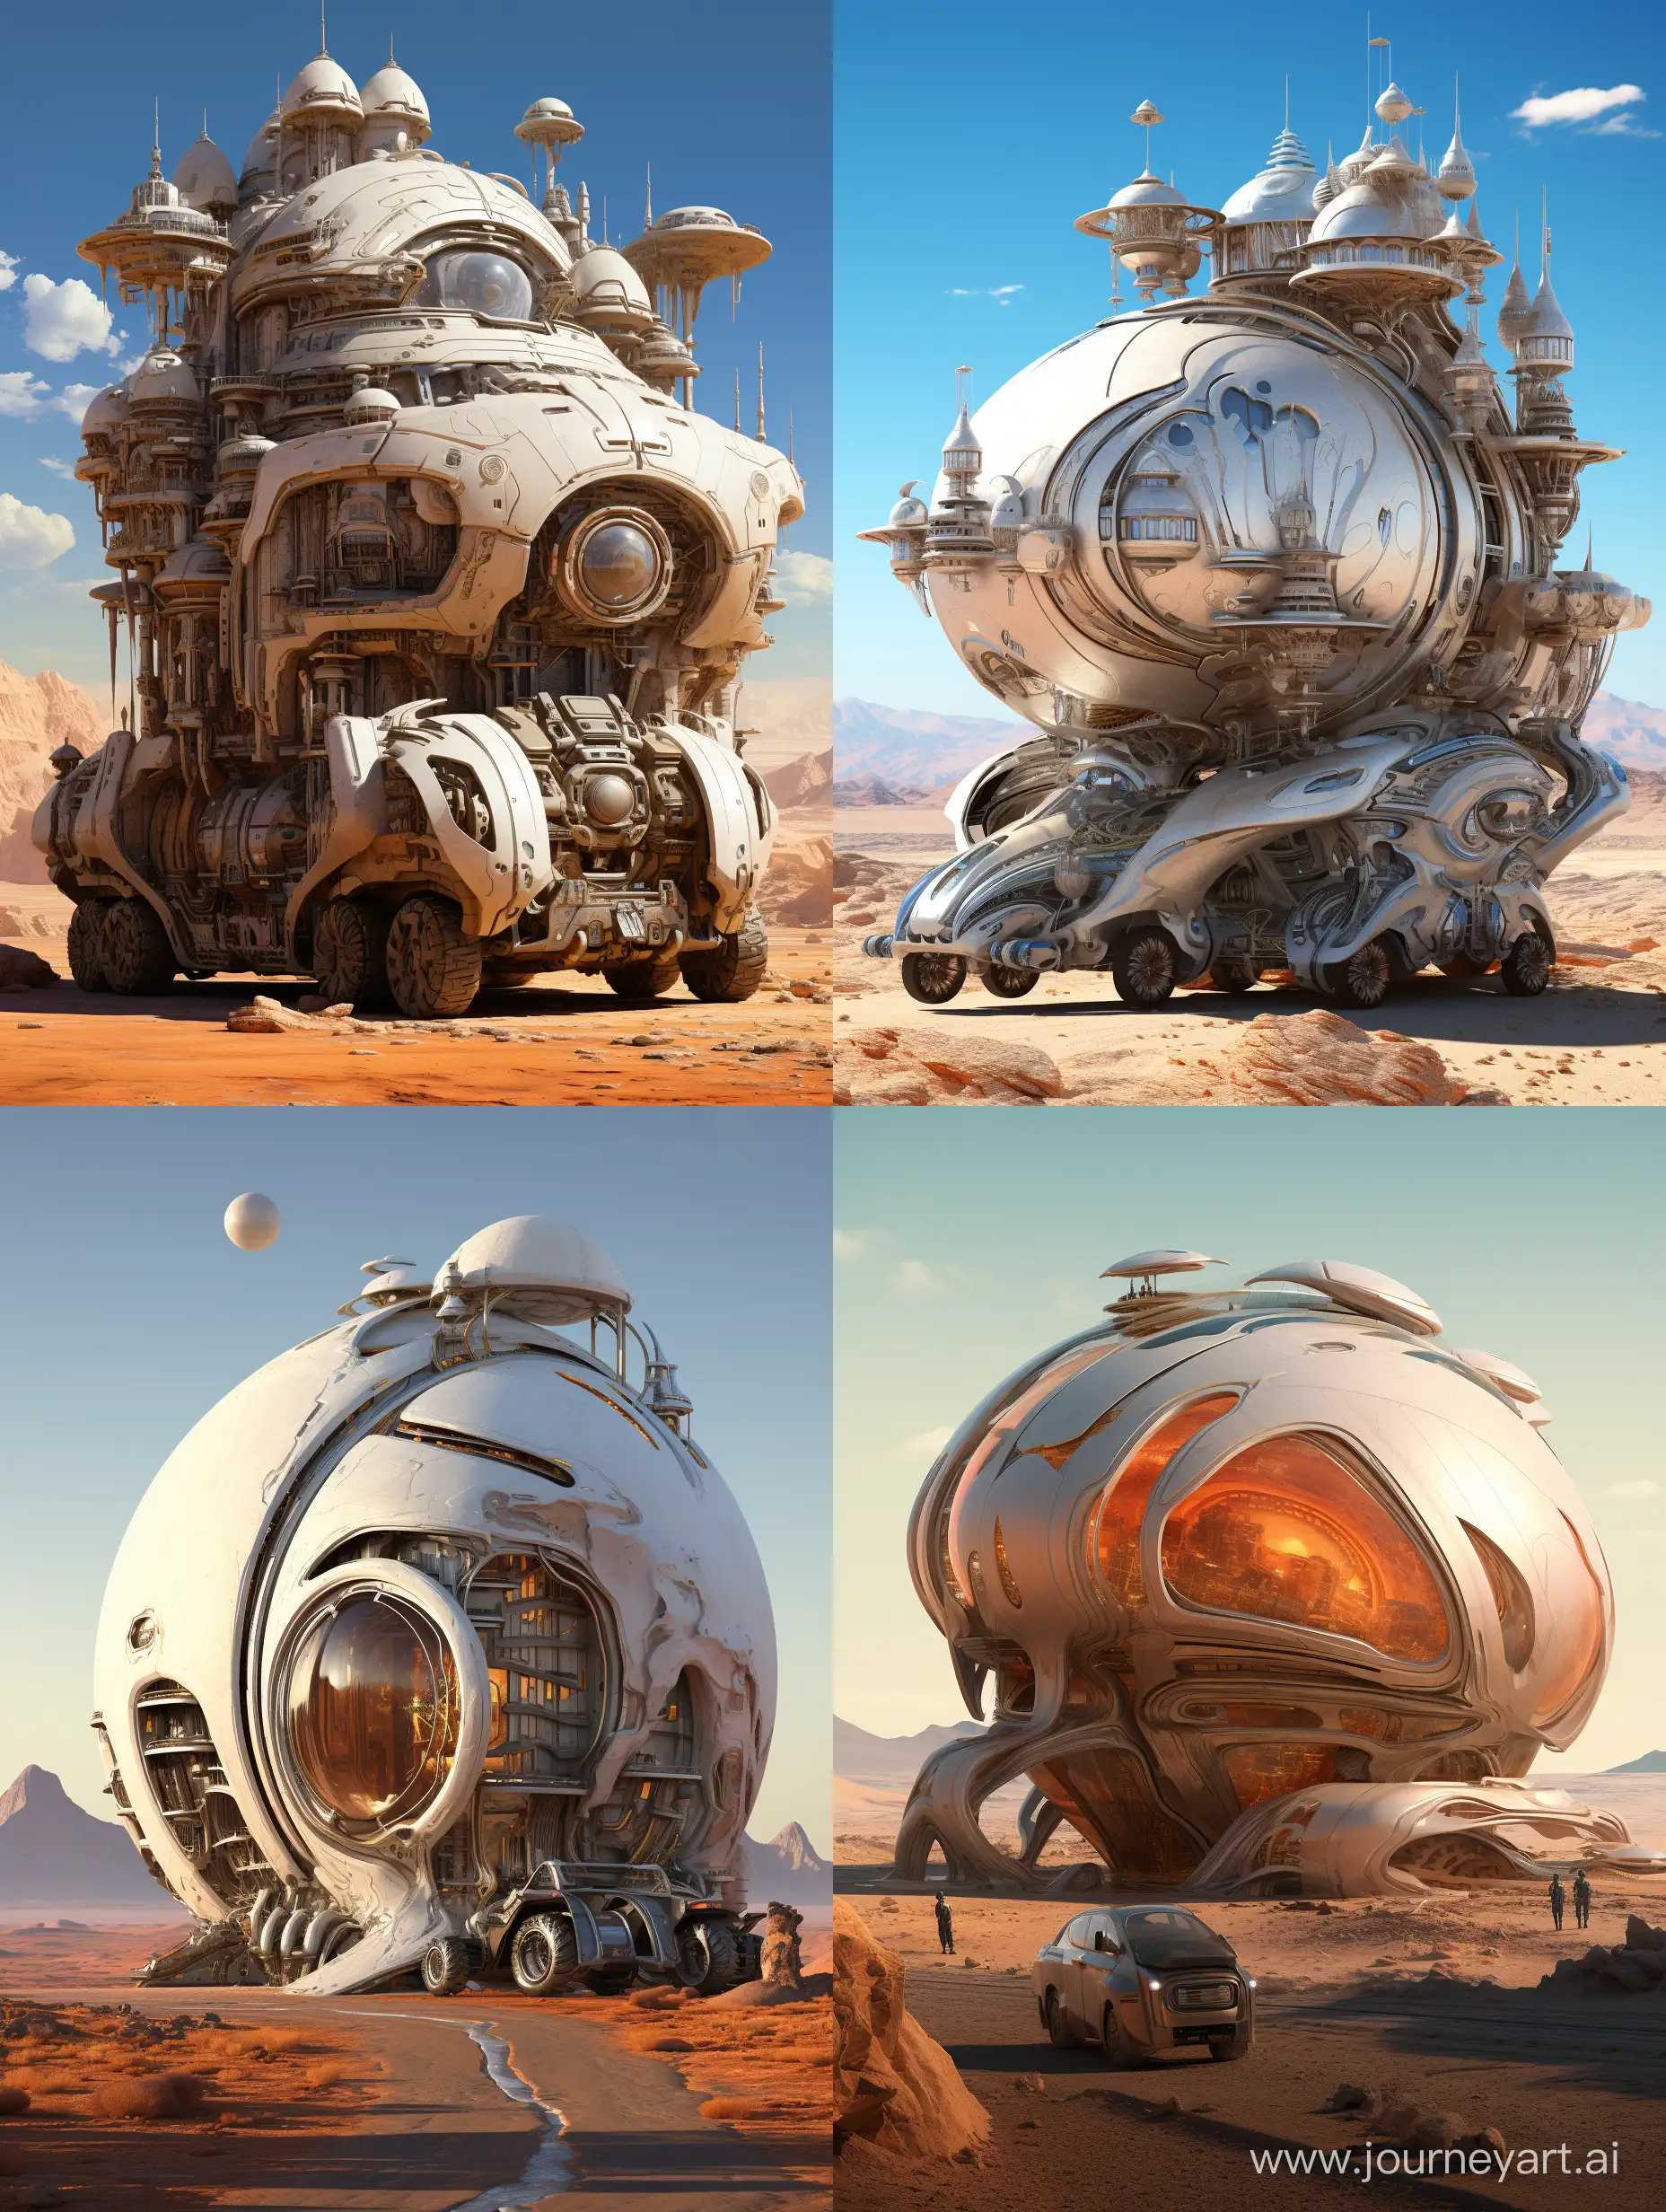 Futuristic-MultiWheel-Spaceship-Parked-in-Desert-Landscape